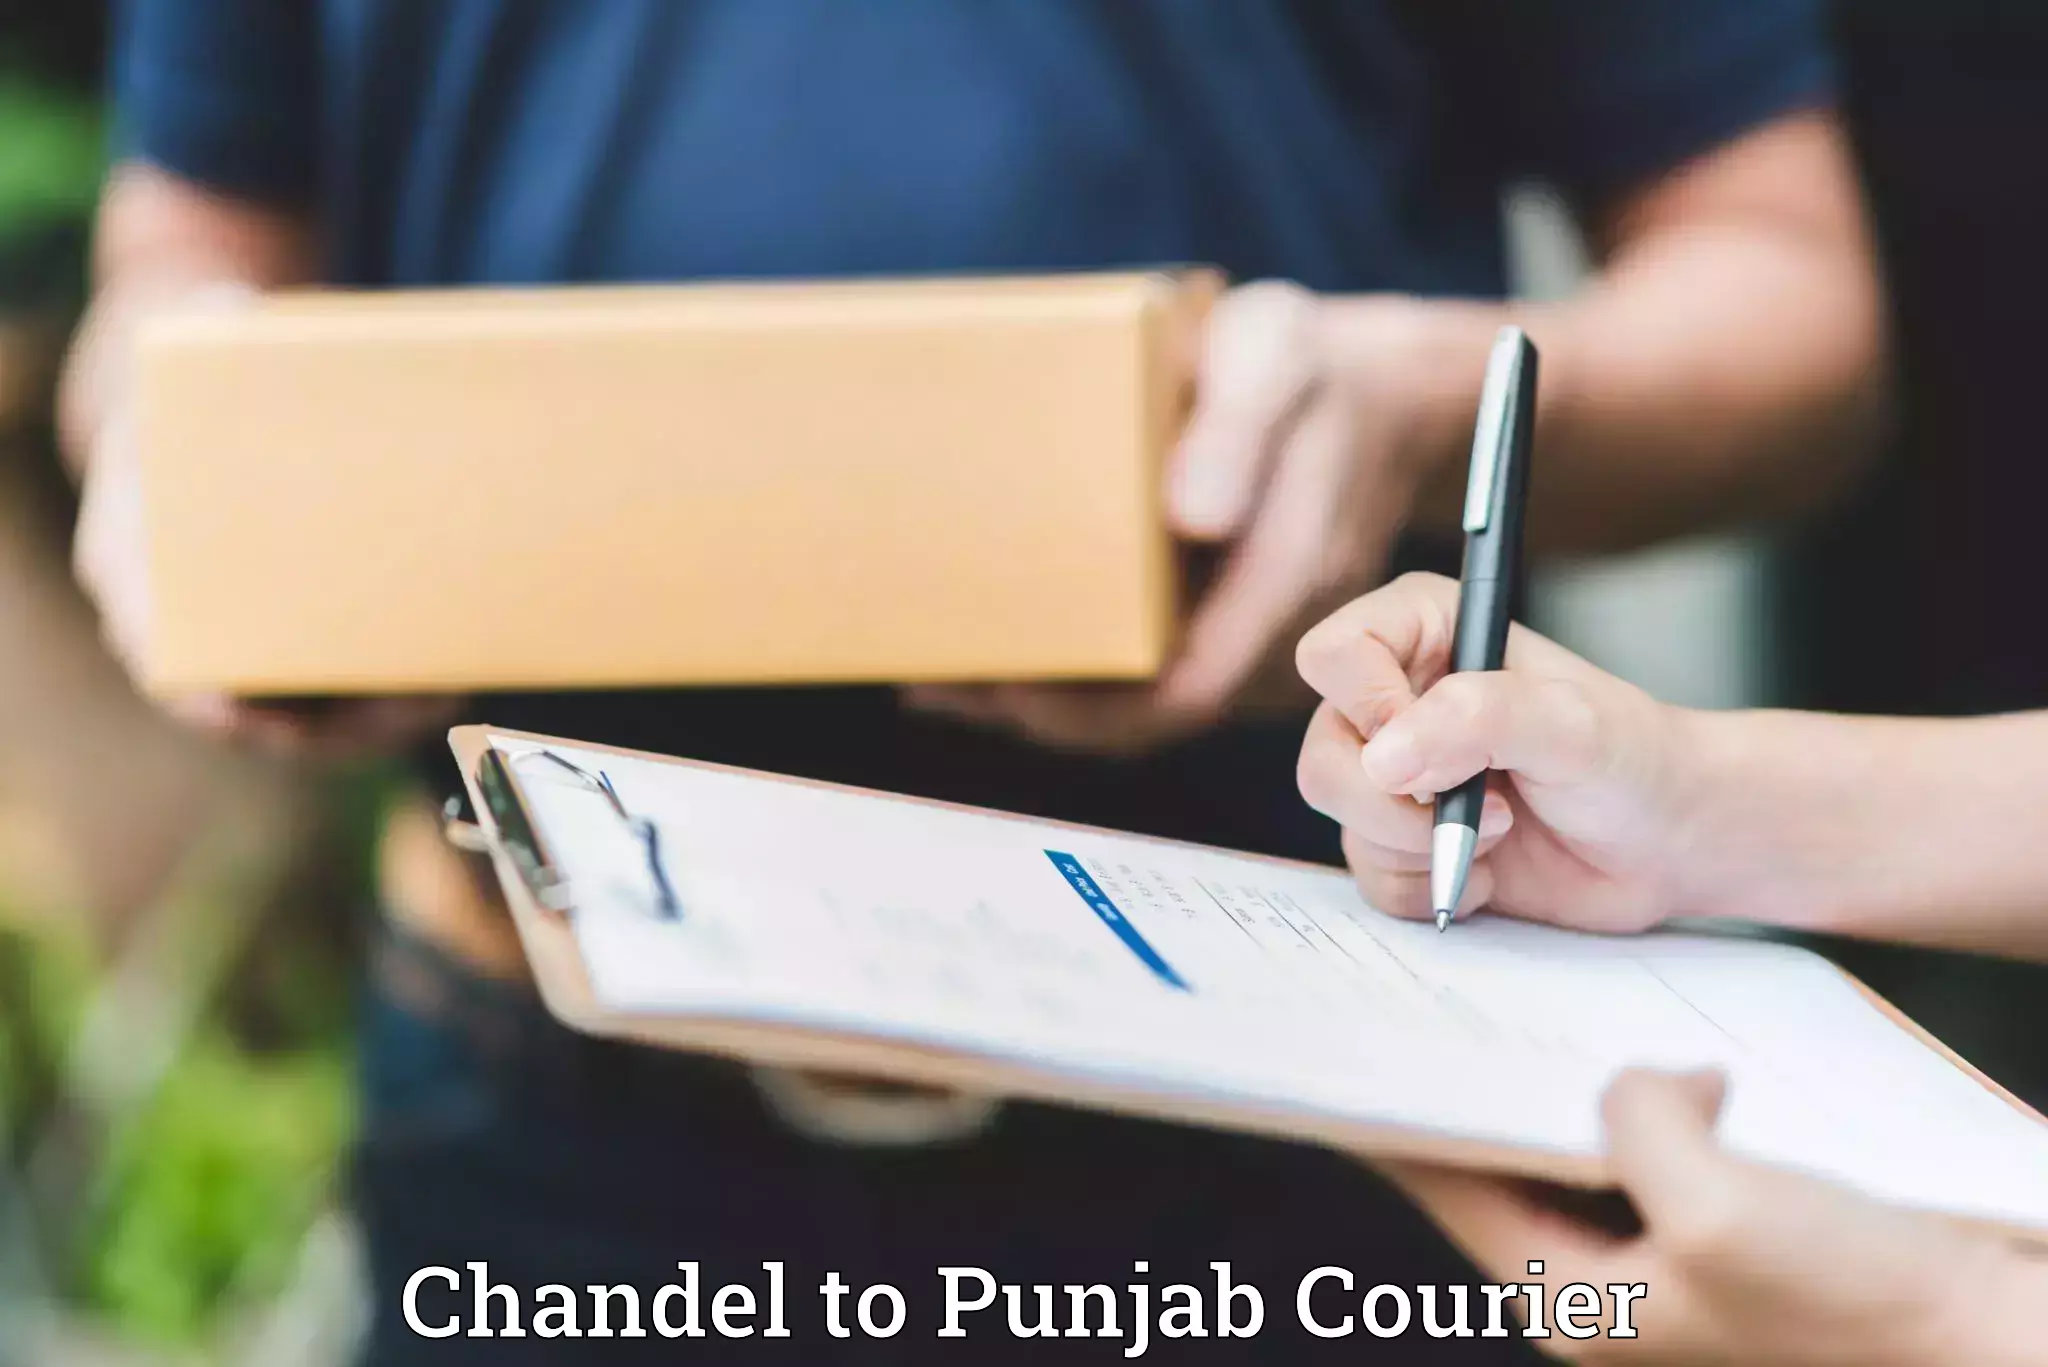 Luggage transit service Chandel to Punjab